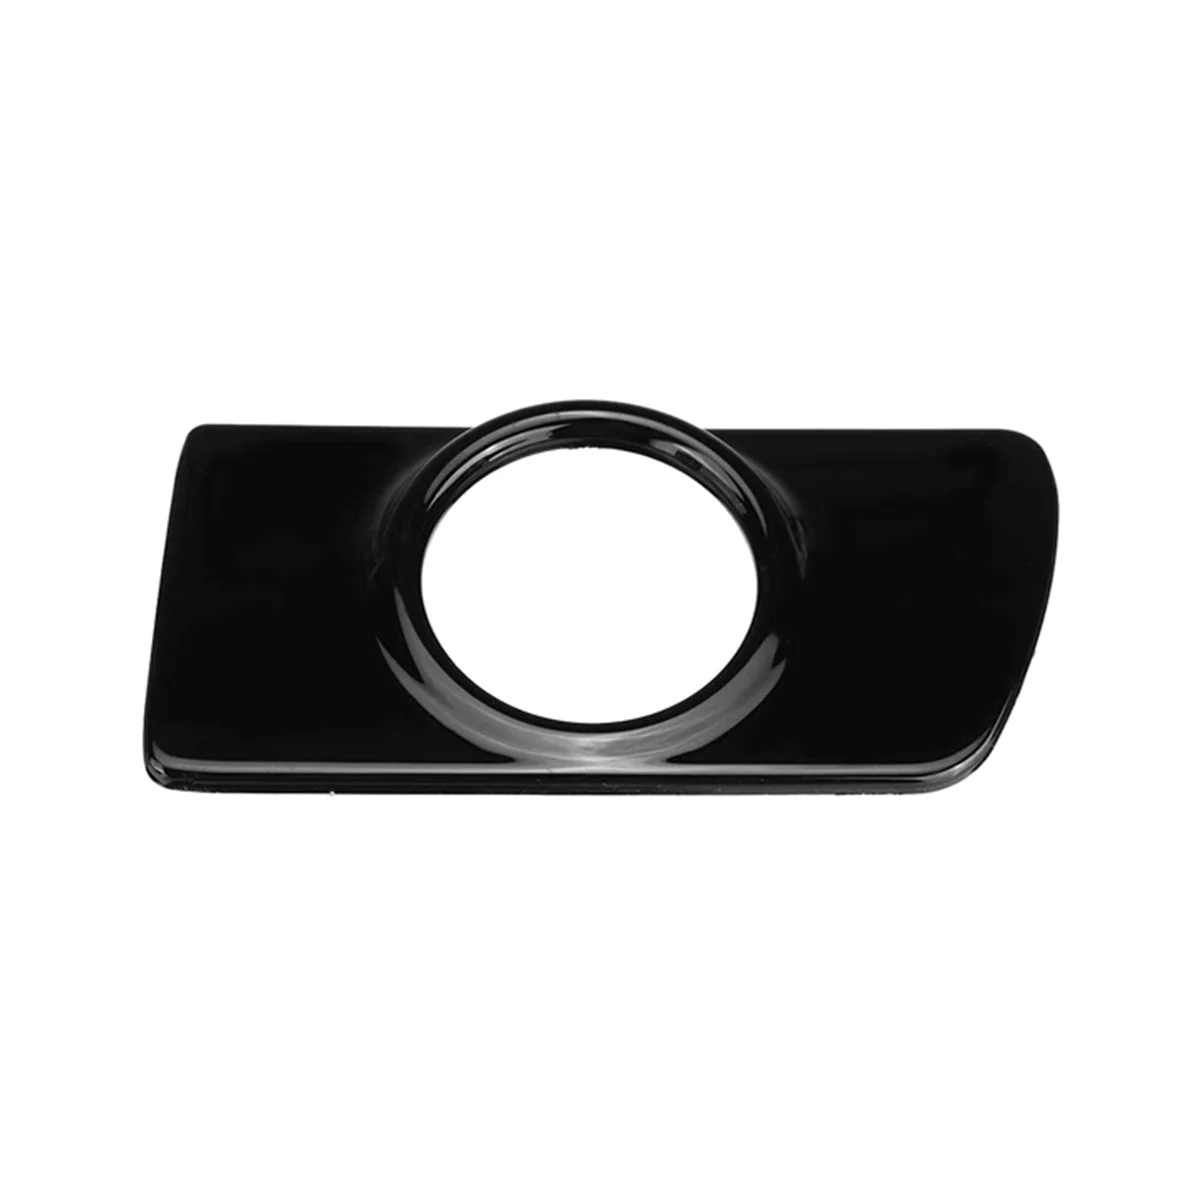 

Глянцевый черный датчик вентиляции адаптер крышка приборной панели рамка для Vauxhall для Astra H 2004-2010 RHD